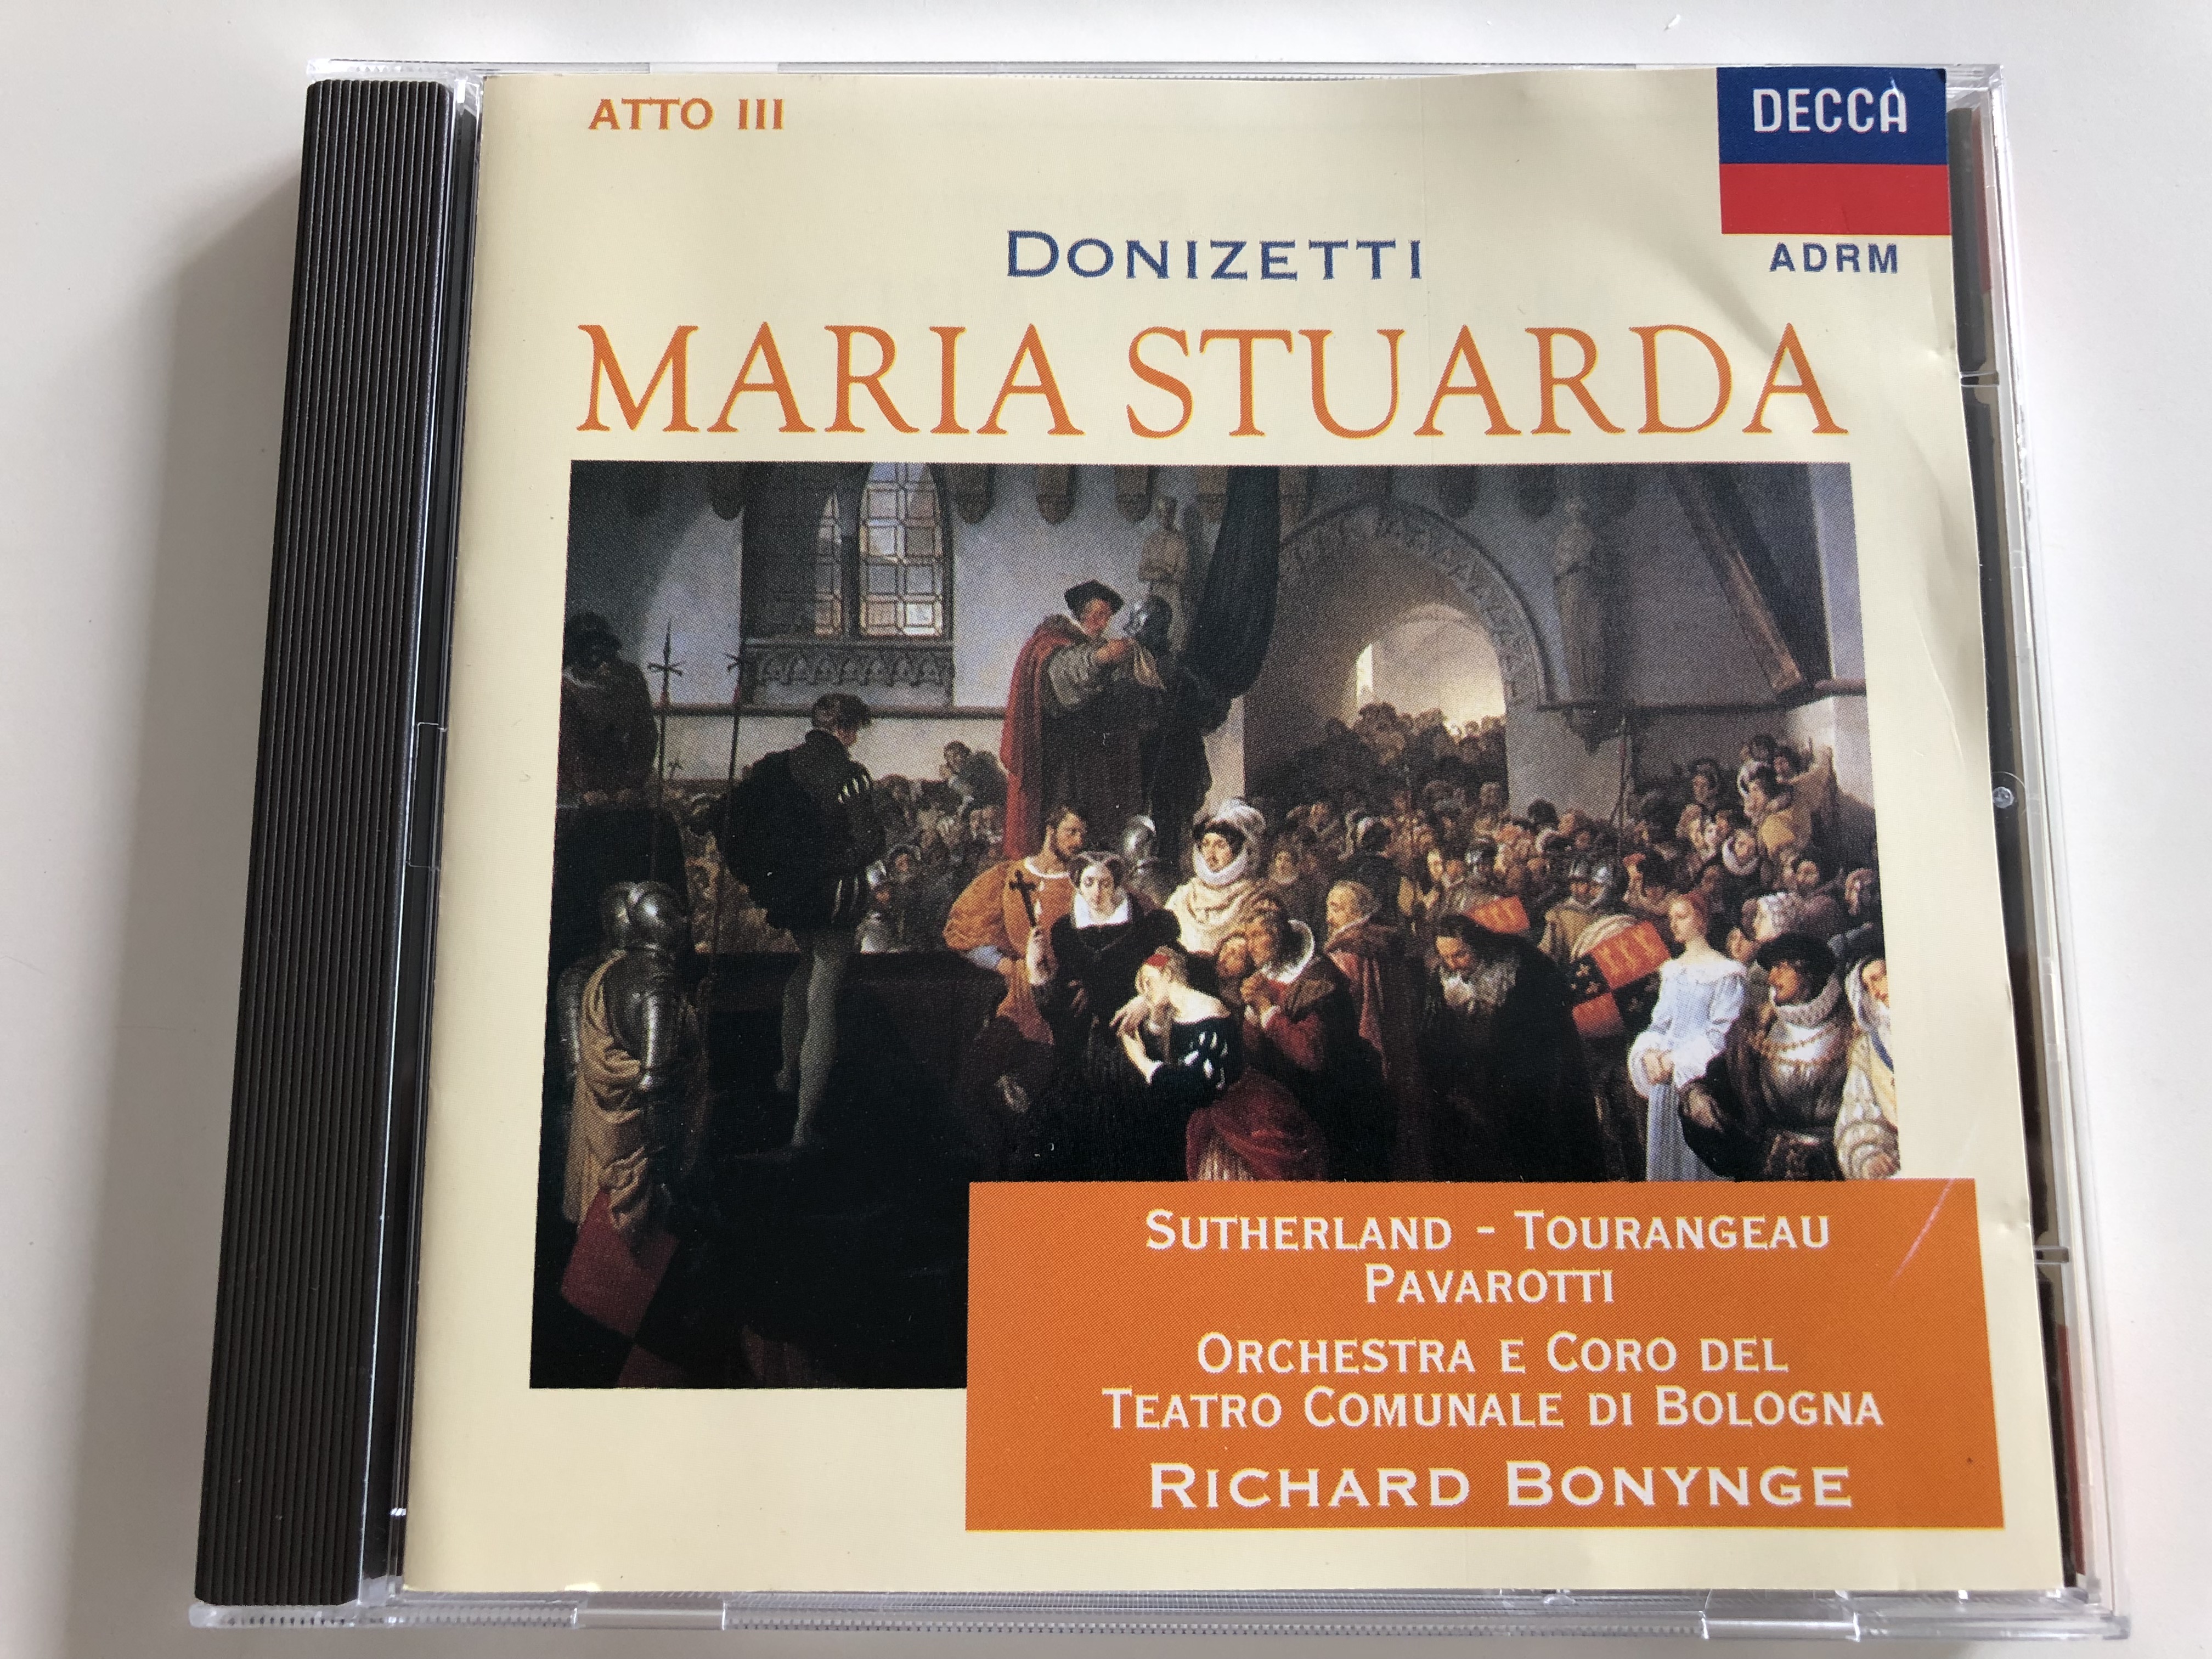 donizetti-maria-stuarda-atto-iii-sutherland-tourangeau-pavarotti-orchestra-e-coro-del-teatro-comunale-di-bologna-conducted-by-richard-bonynge-decca-audio-cd-1996-452-671-2-1-.jpg